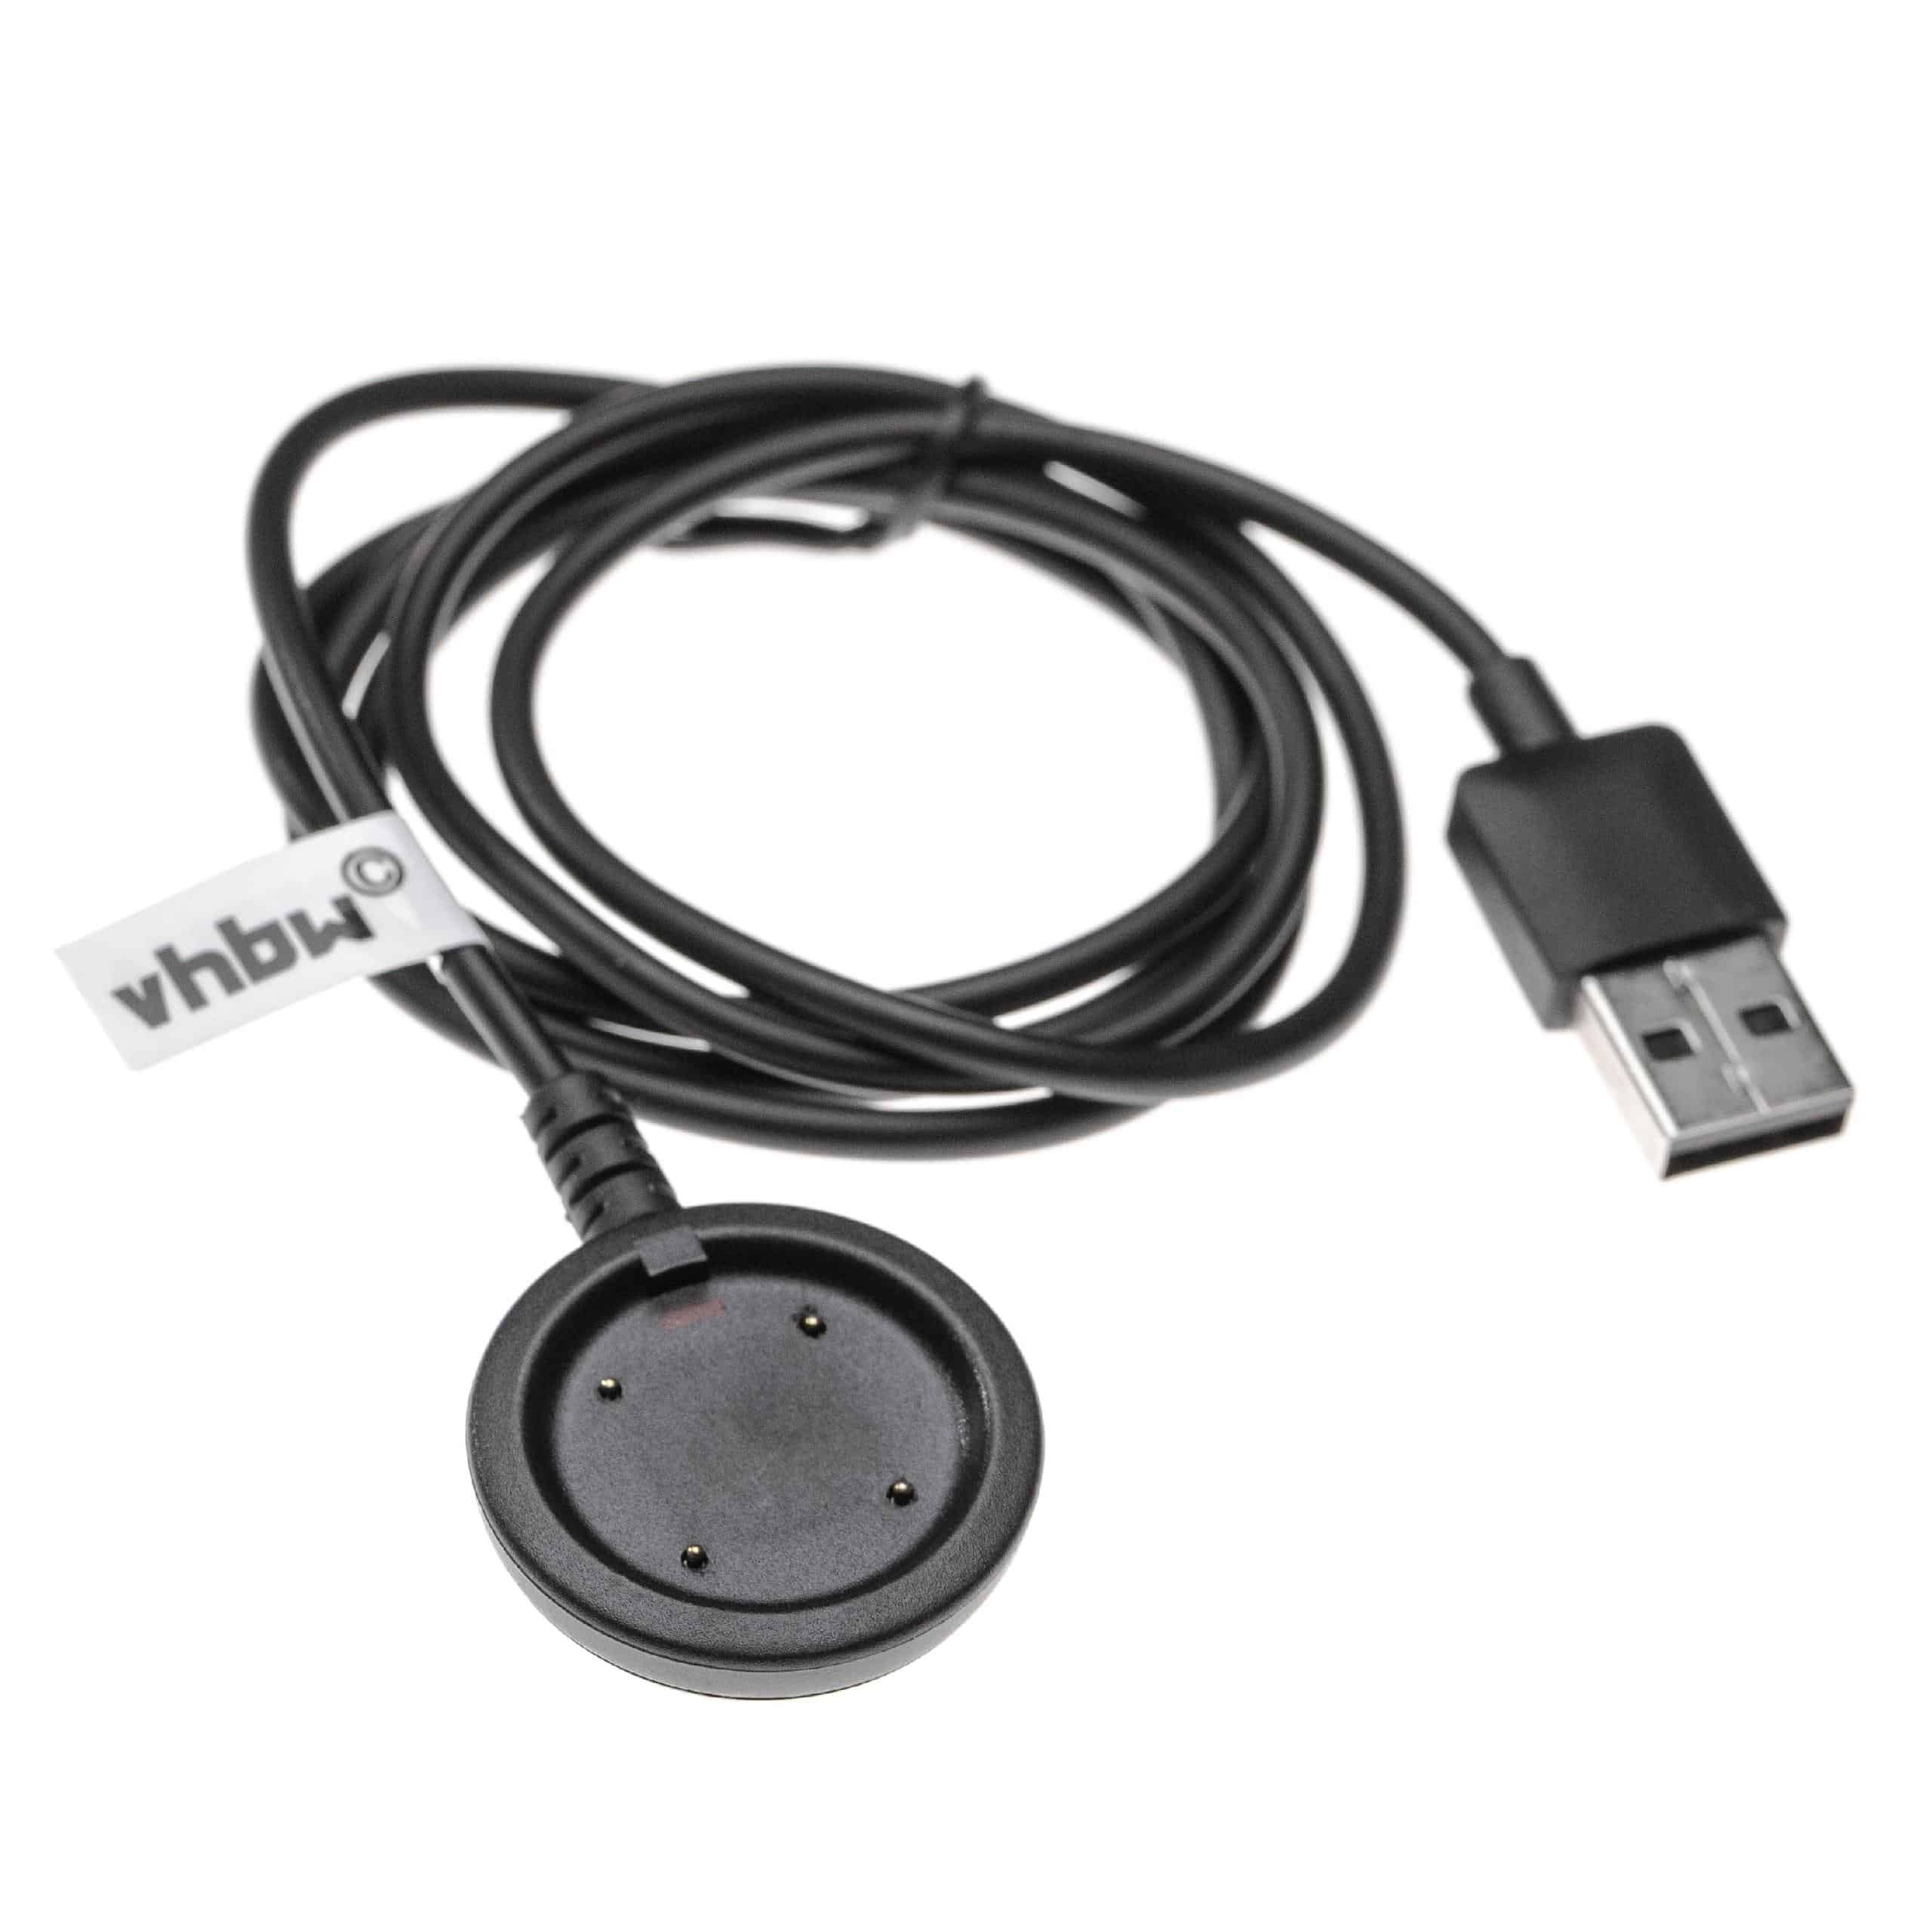 Câble de charge pour bracelet d'activité Polar Vantage et autres – câble de 97 cm, fiche USB